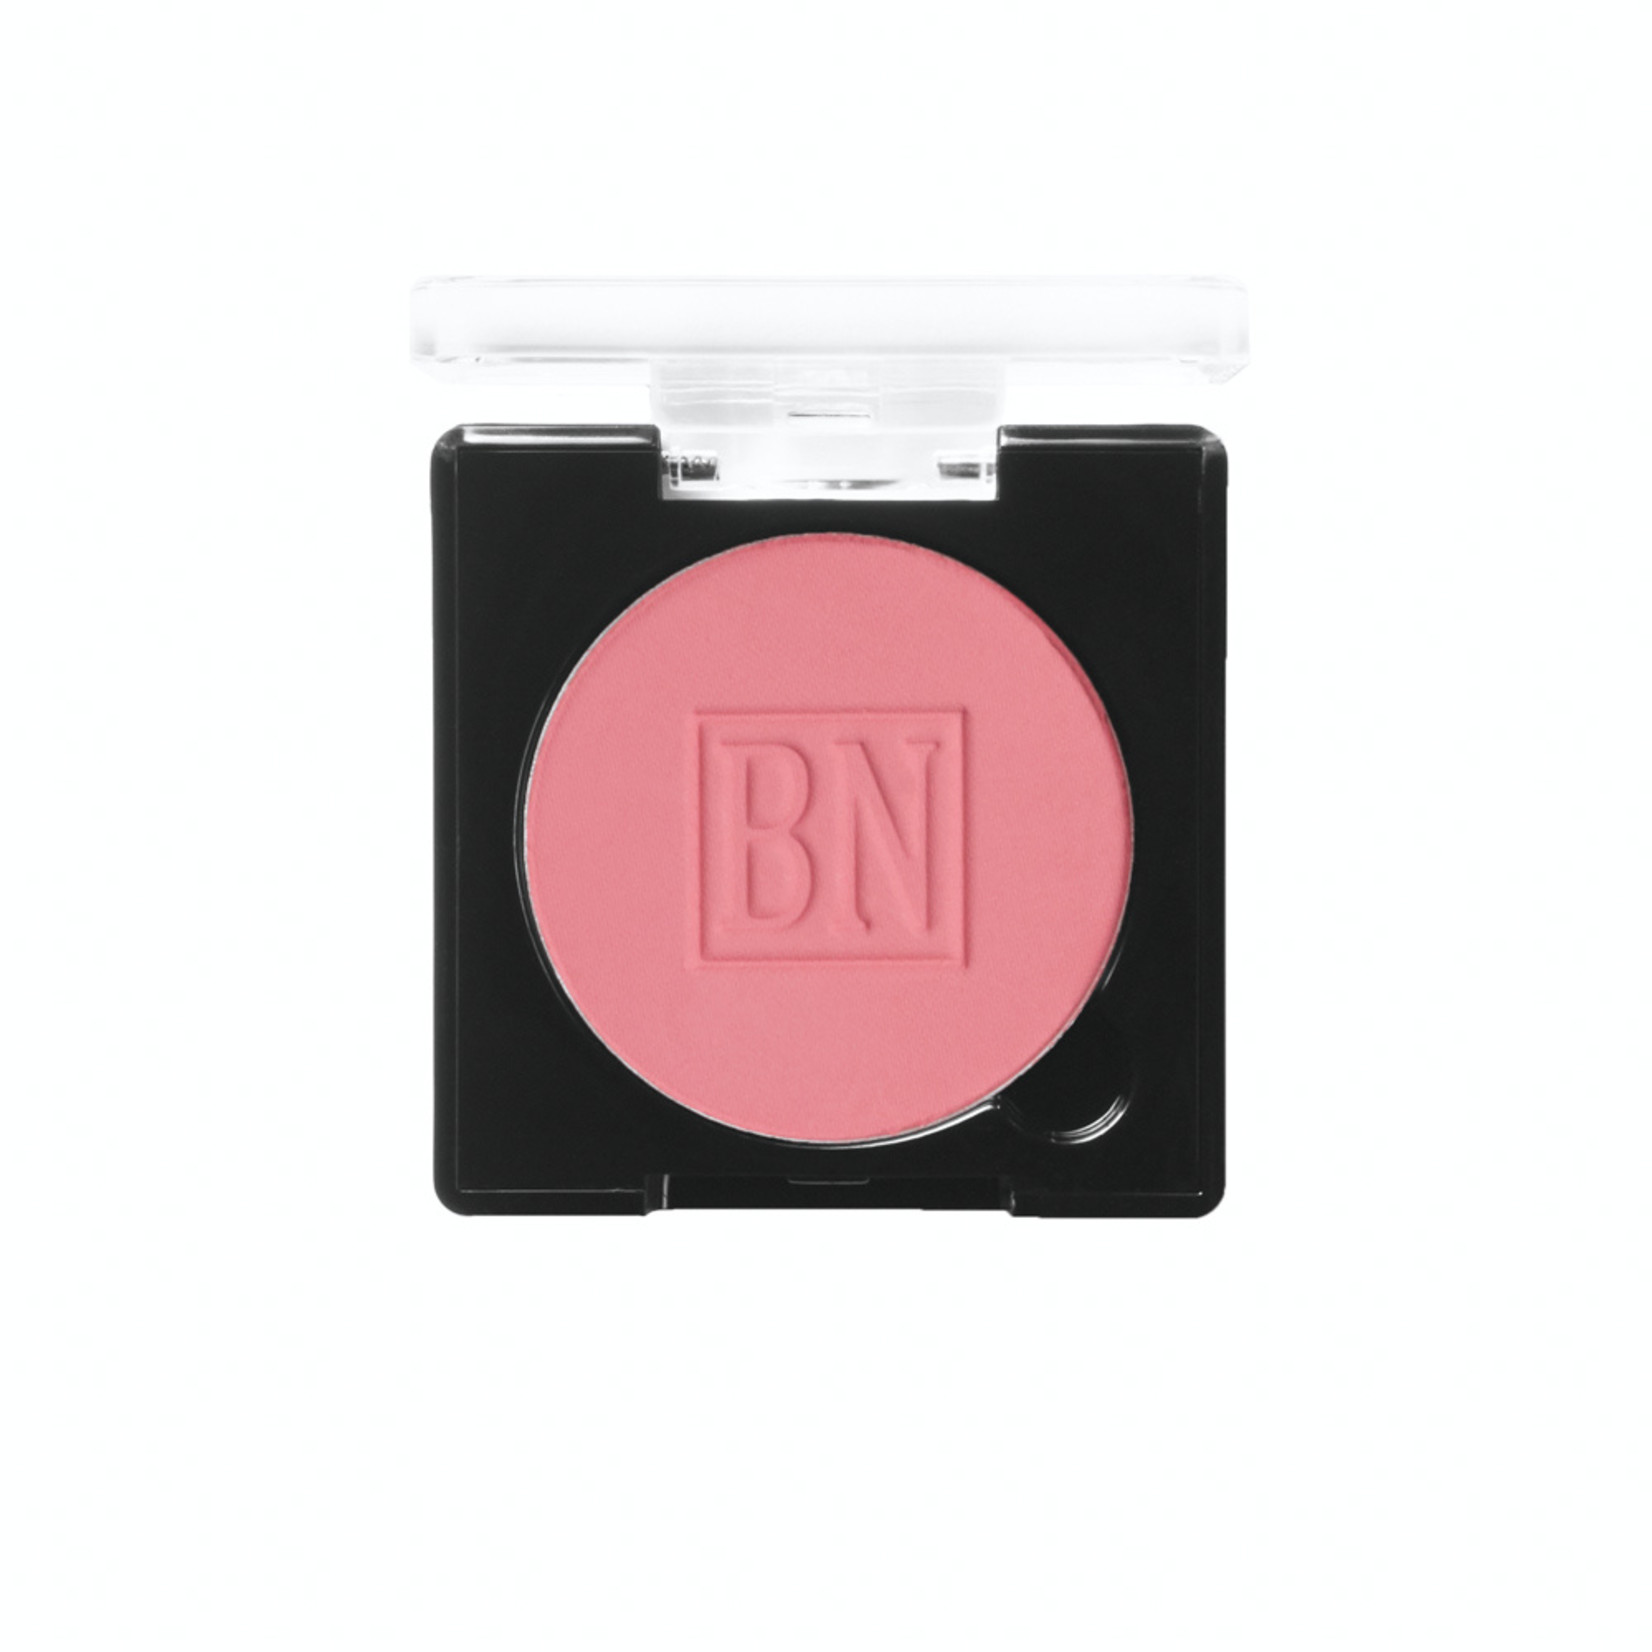 Ben Nye Powder Blush - Roses & Pinks